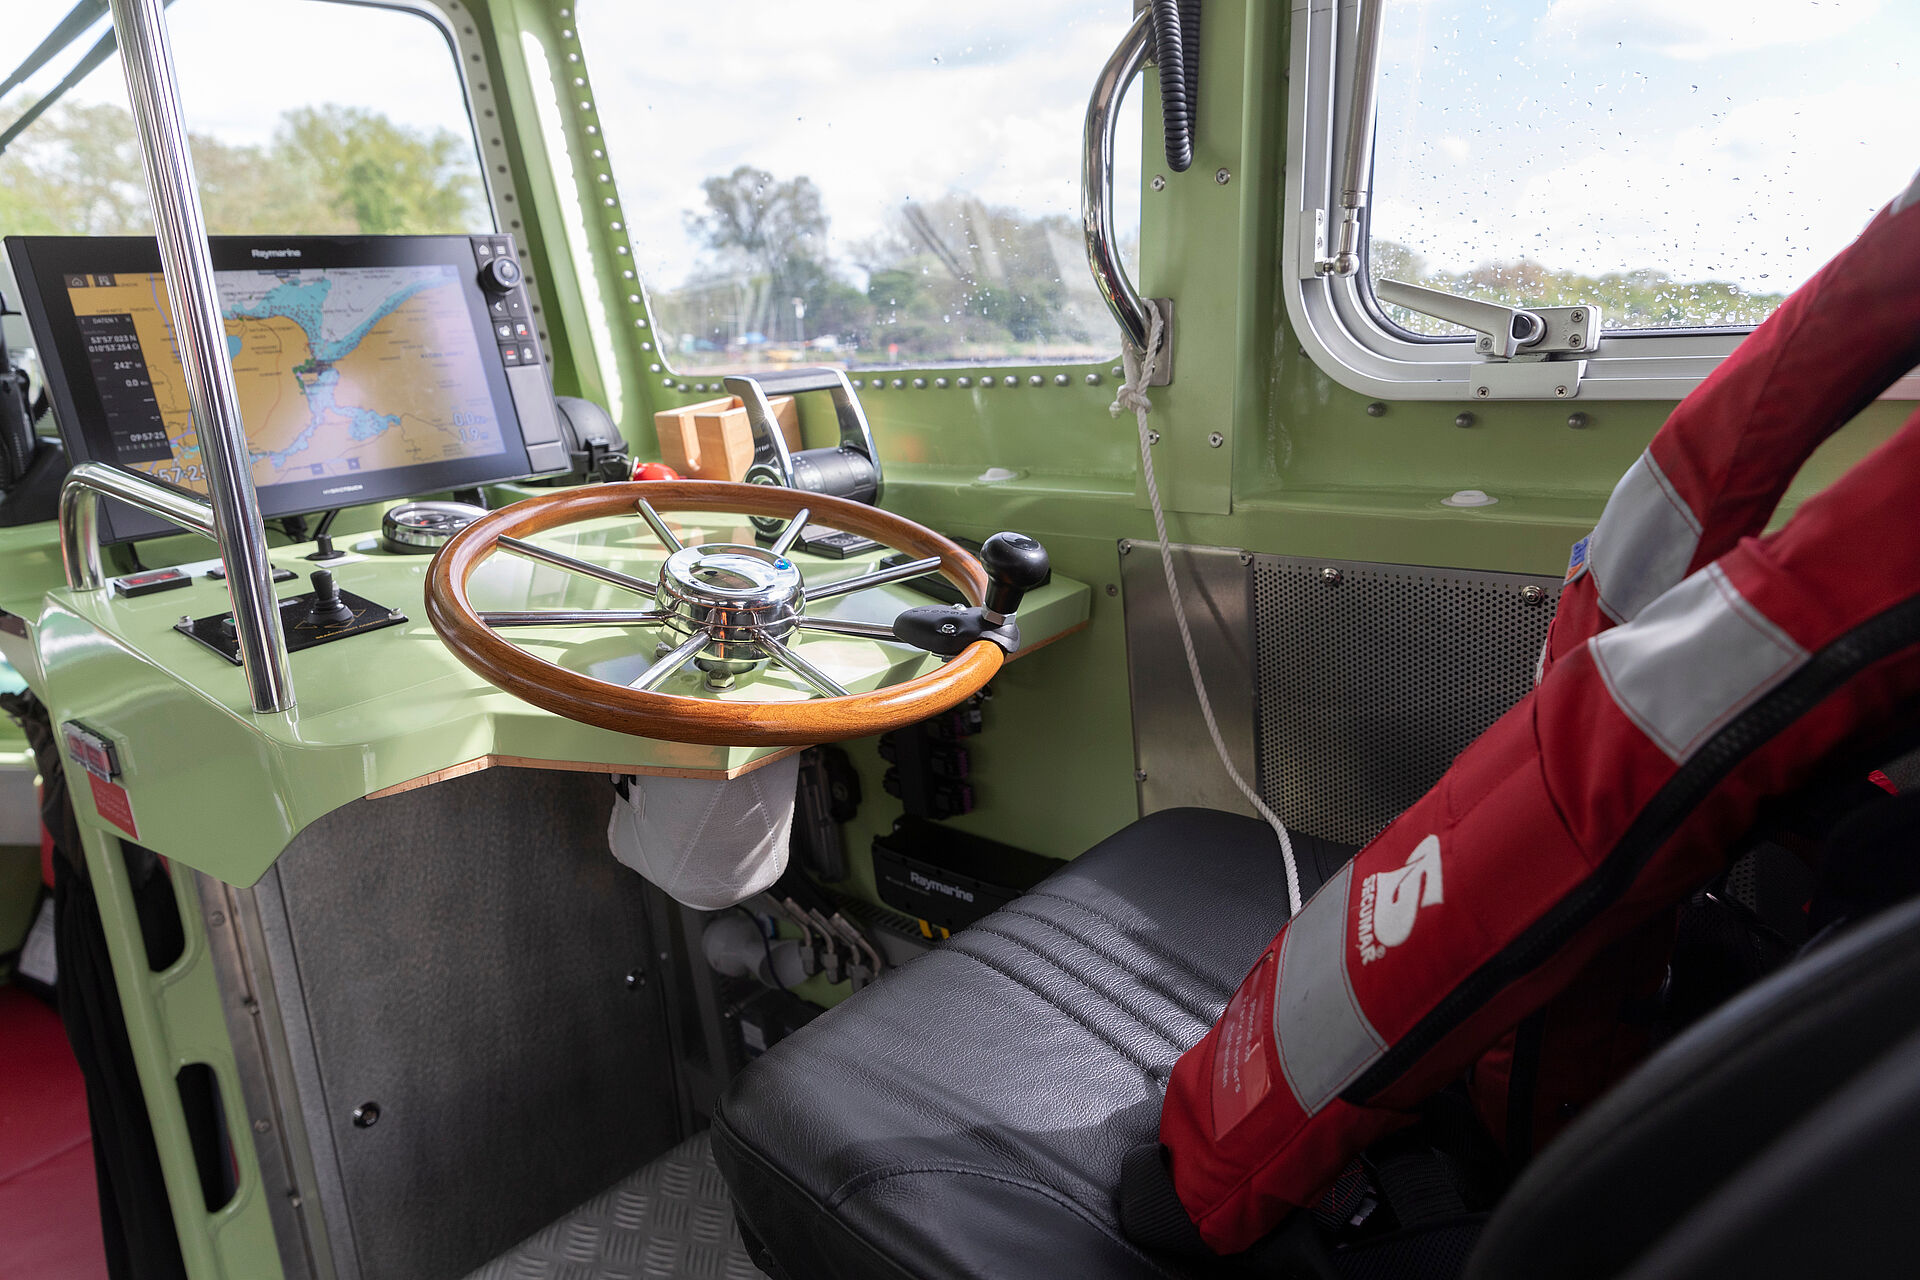 Blick auf den Fahrstand im Inneren eines Seenotrettungsbootes. Über dem Sitz hängt eine rote Rettungsweste, über dem Steuerrad aus Holz zeigt ein Monitor eine elektronische Seekarte.